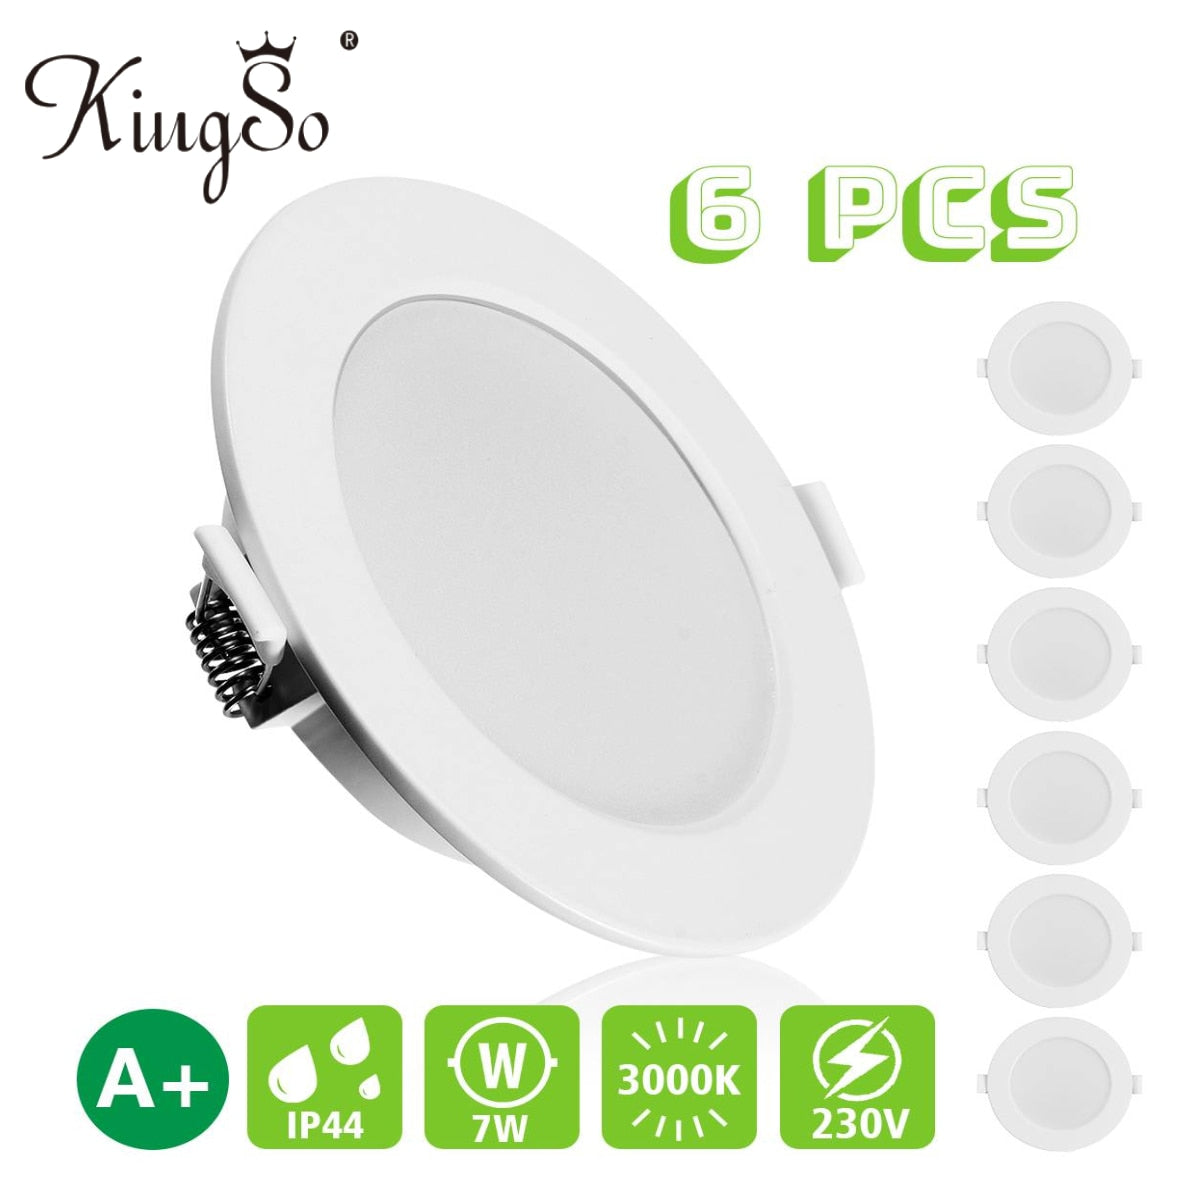 KingSo 6PCS LED Downlights 7W 600LM 230V 100mm 3000K IP44 Recessed Ceiling lights for Living Room Bedroom Kitchen